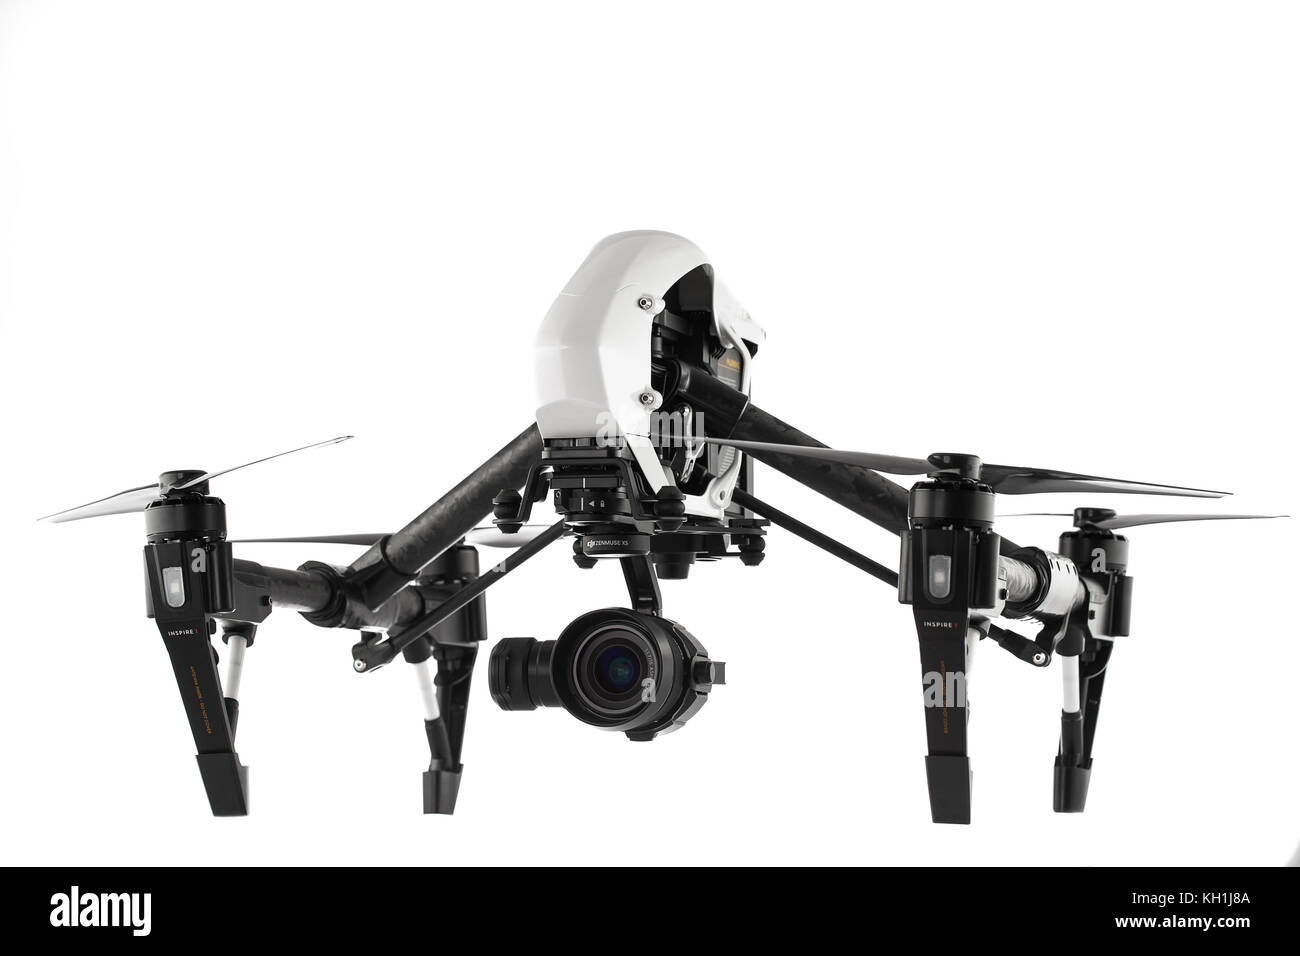 Varna, Bulgarie - 22 avril ,2016: Image de DJI inspire 1 Pro drone UAV quadcopter qui enregistre 4K vidéos et 16MP images fixes et est contrôlé par wi Banque D'Images